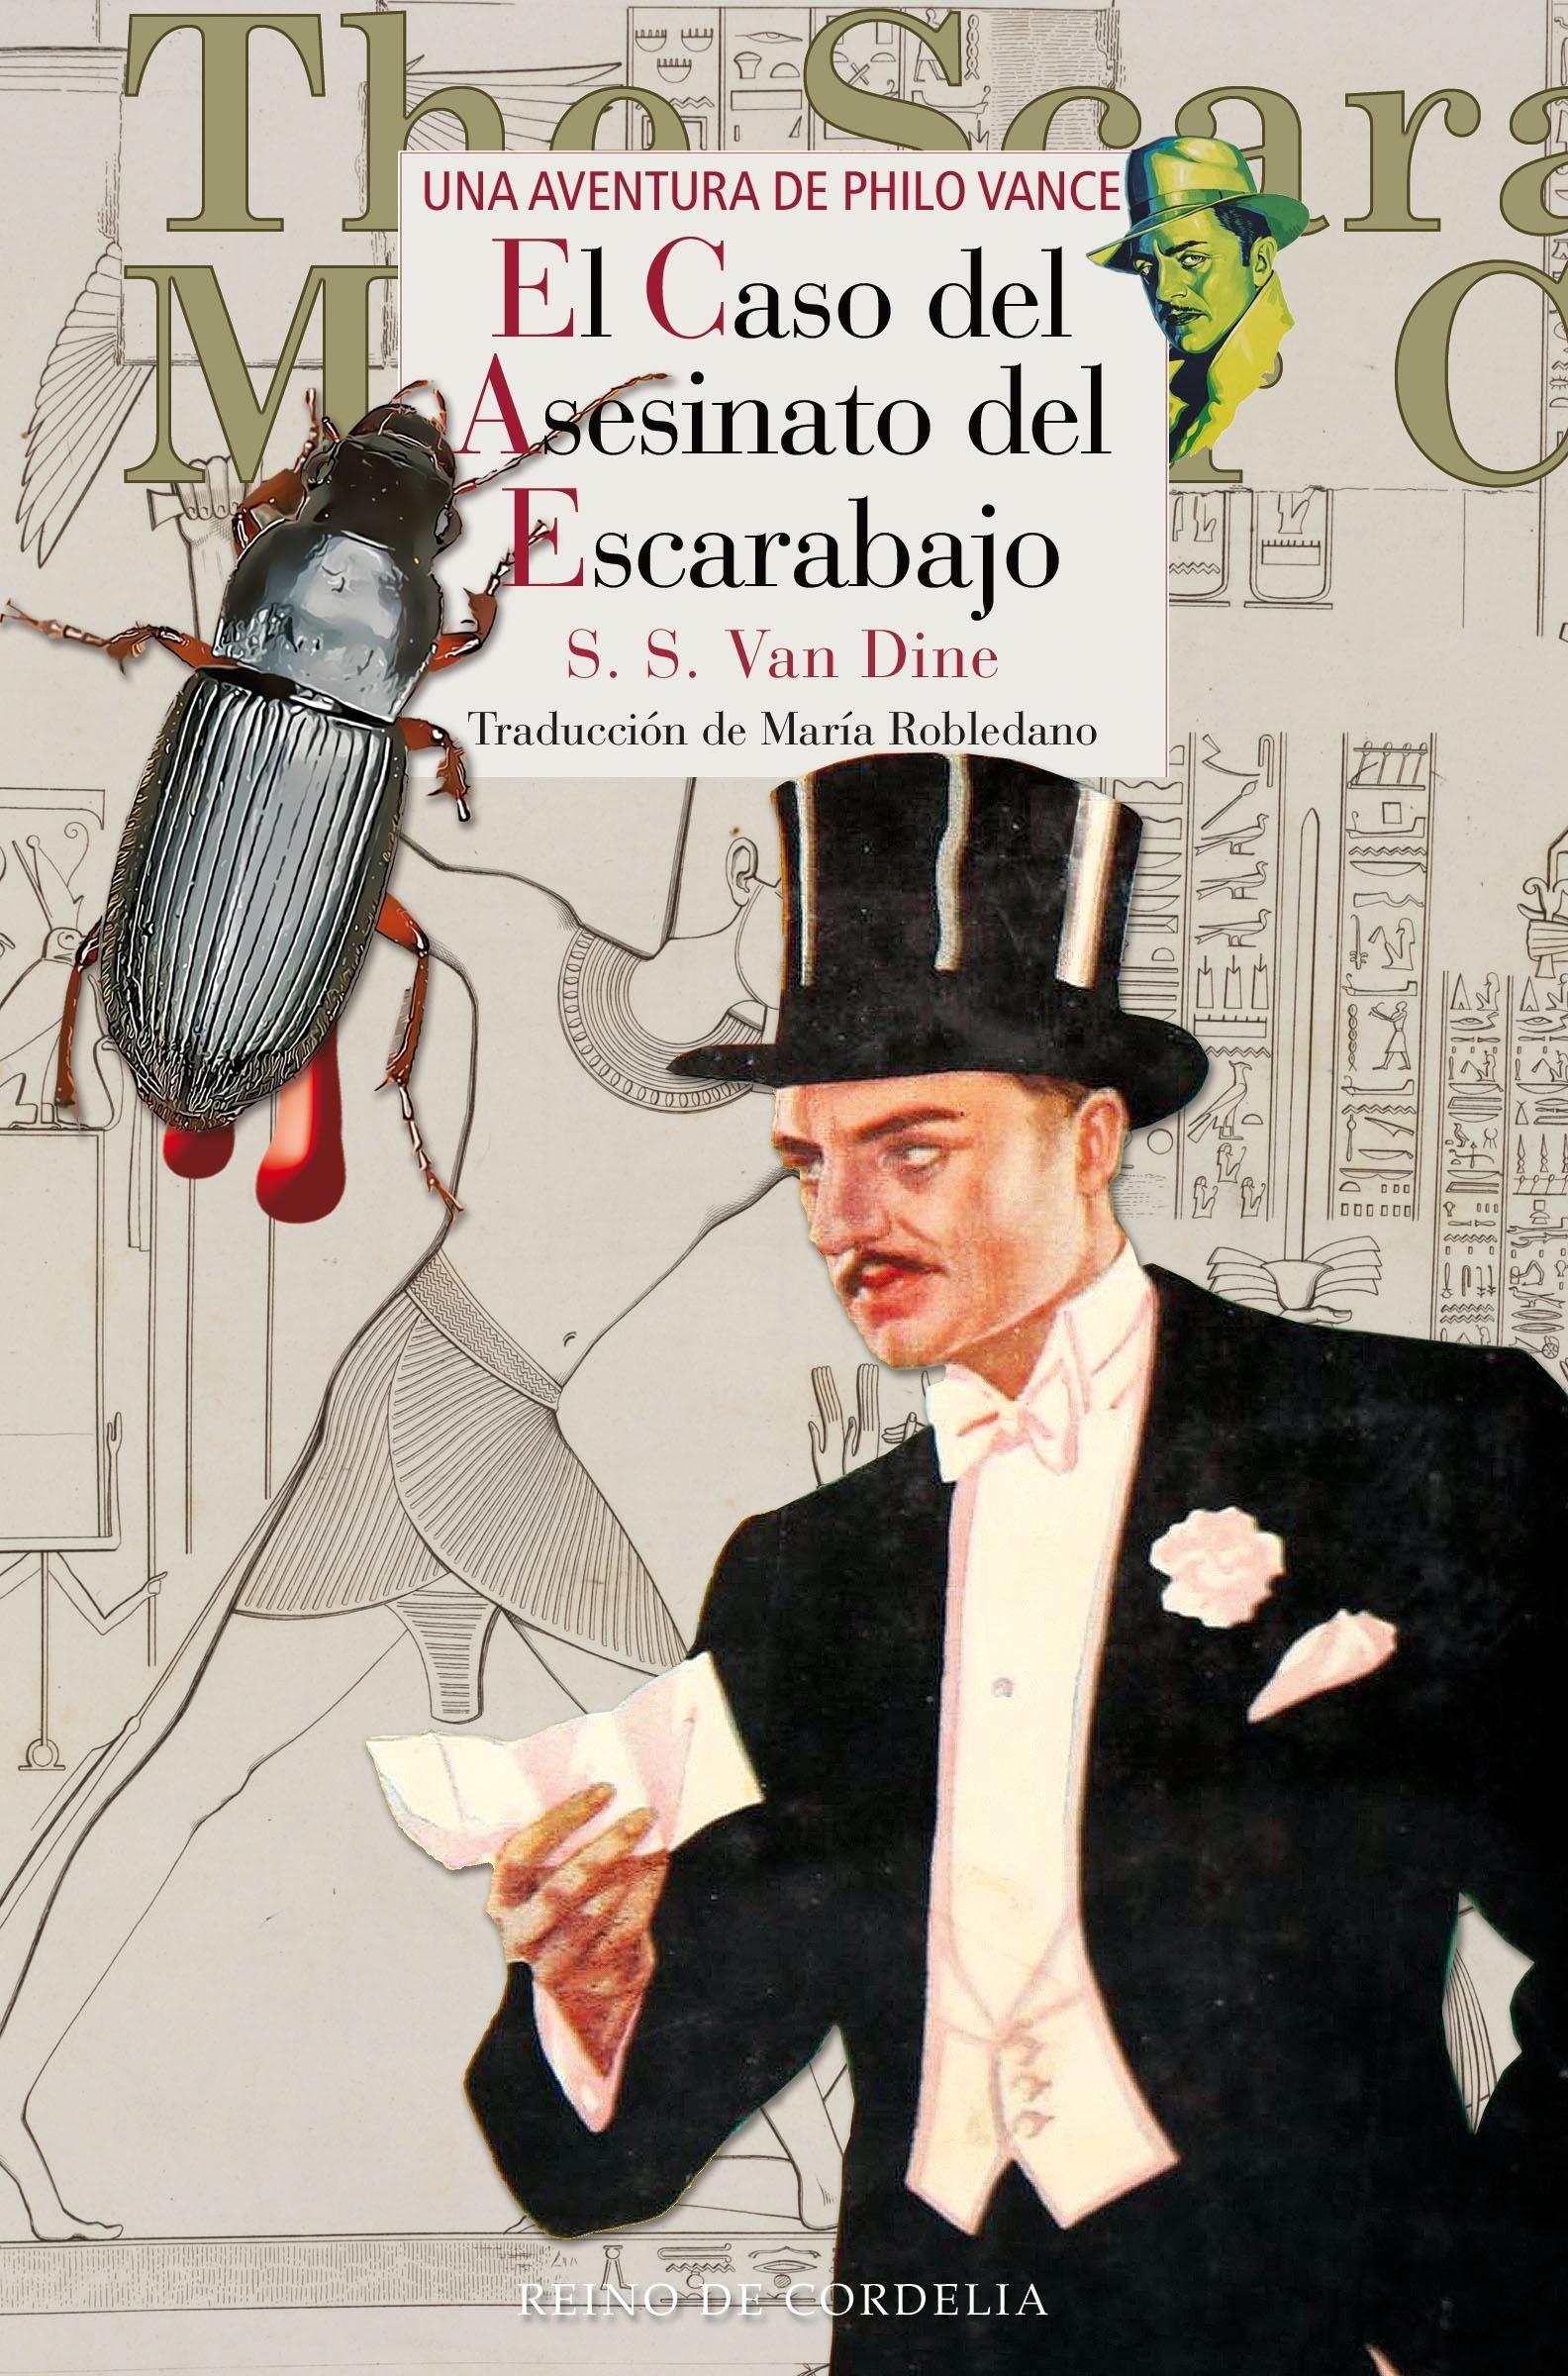 El Caso del Asesinato del Escarabajo "Una Aventura de Philo Vance". 